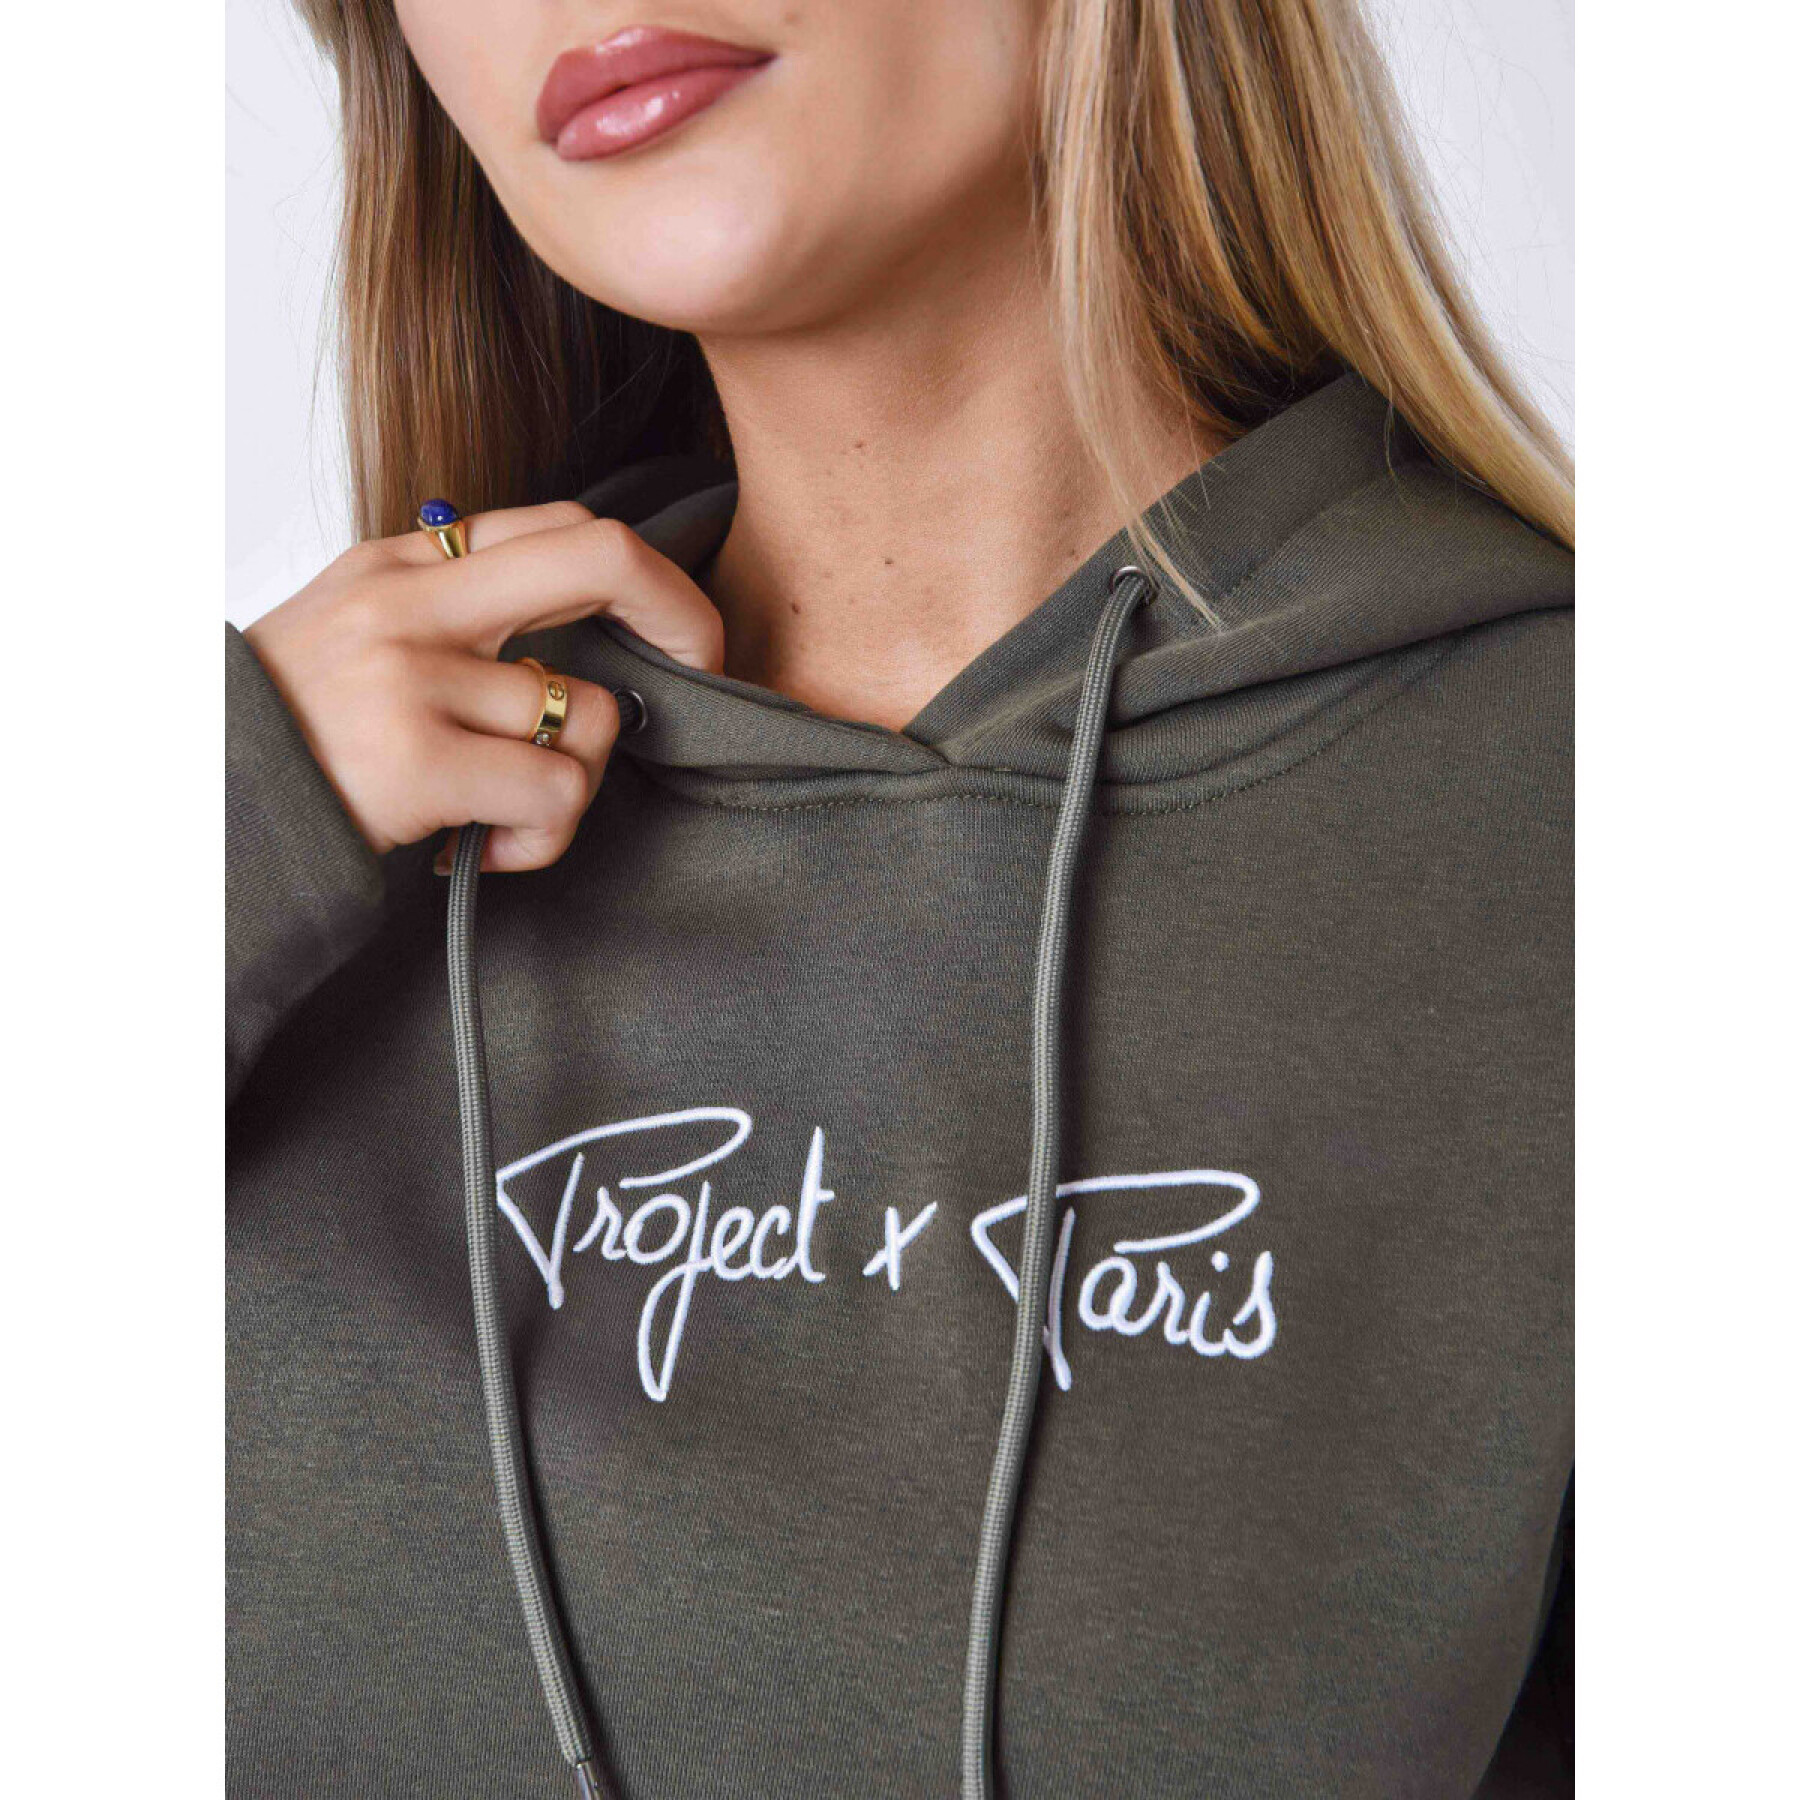 Women's hooded sweatshirt Project X Paris Essentials